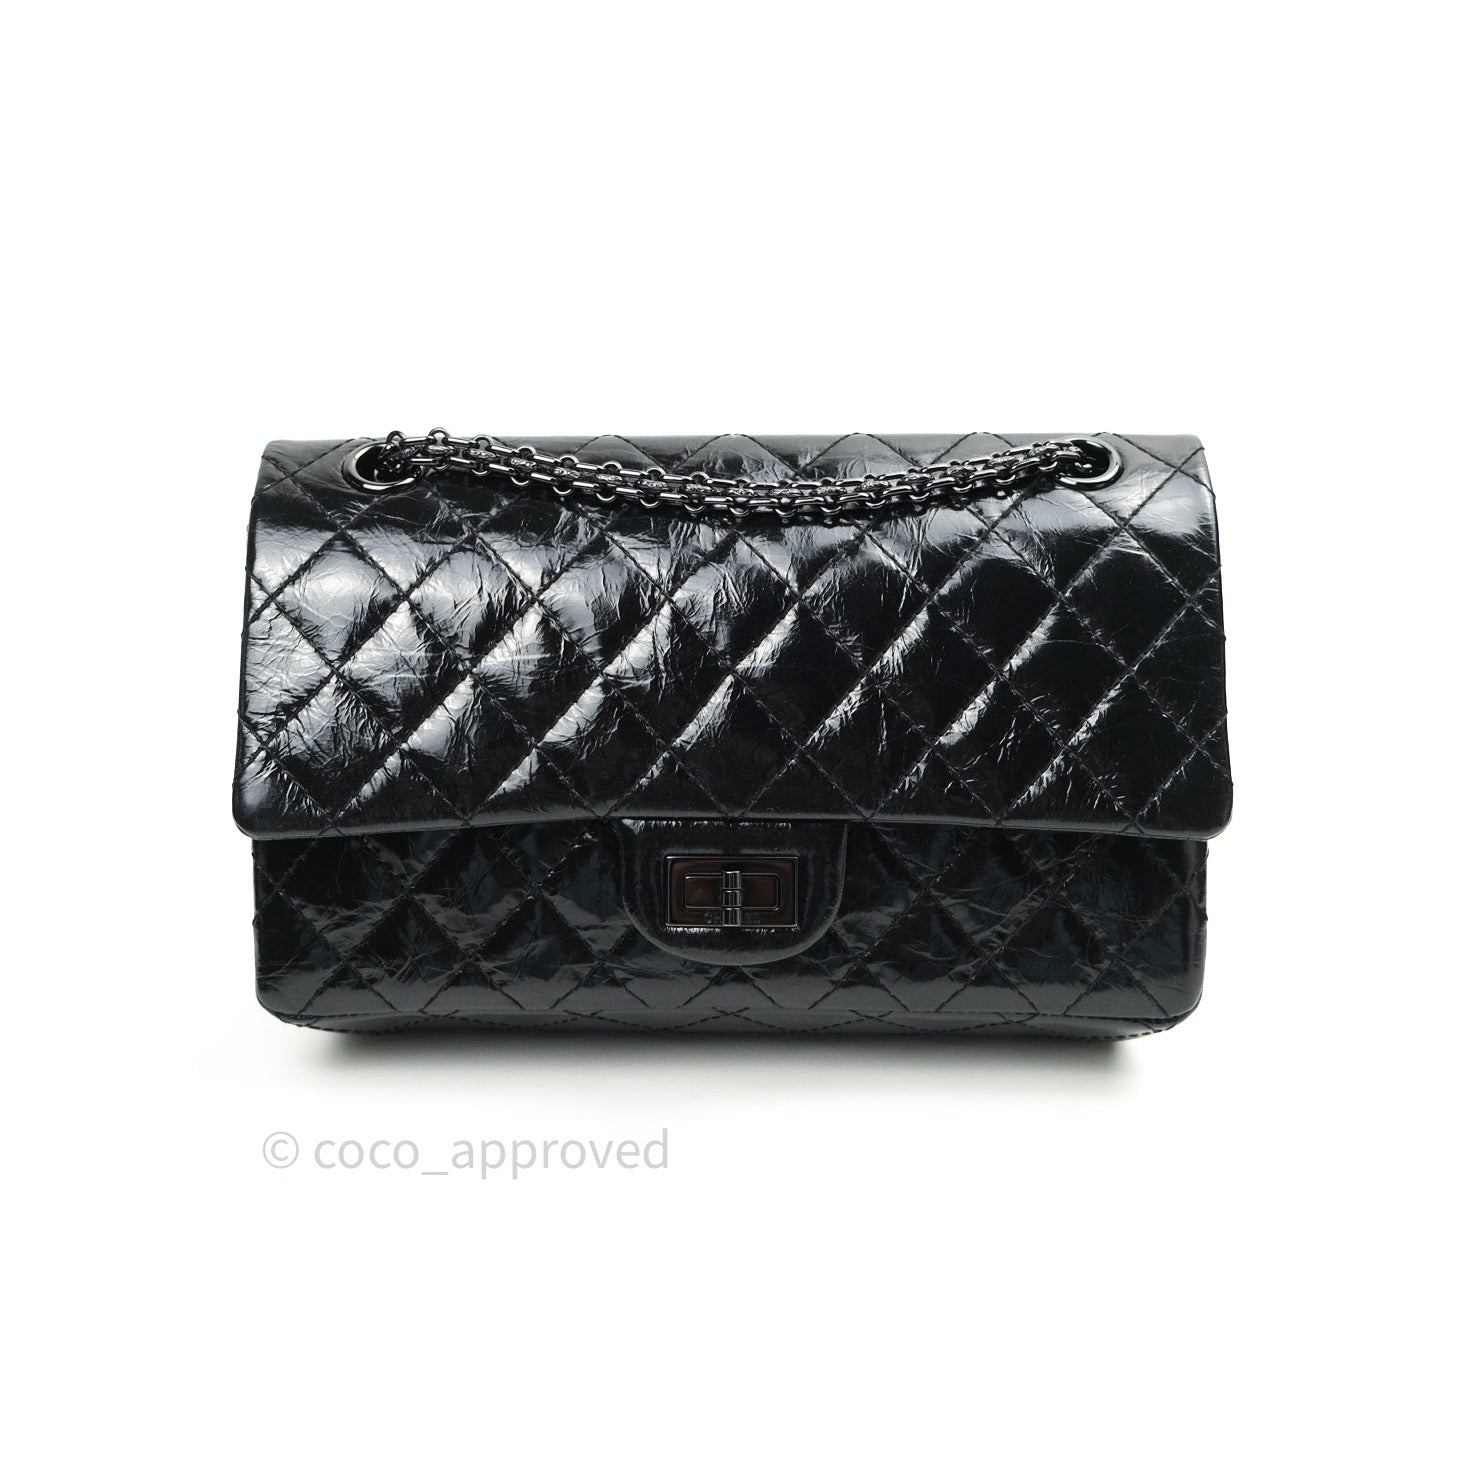 Chanel 2.55 Reissue Glazed Calfskin So Black 225 Black Hardware